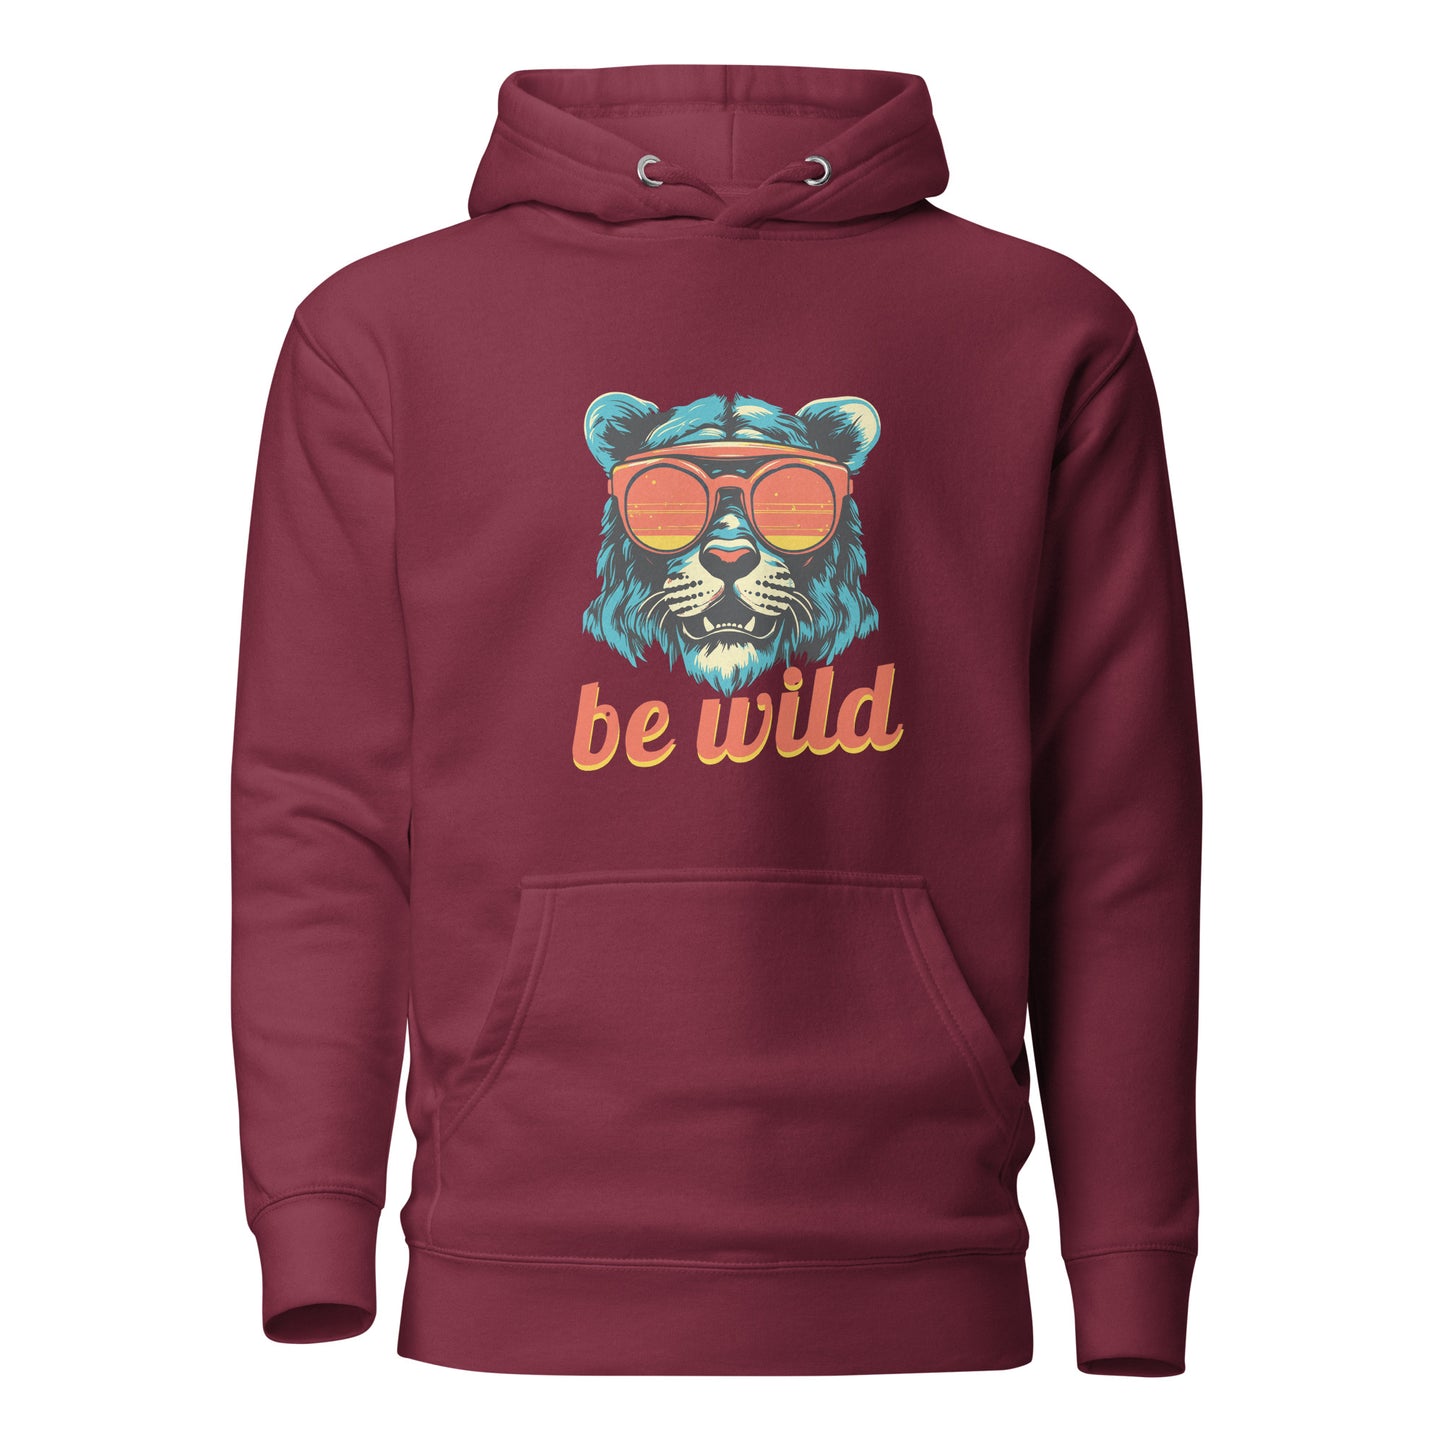 "Be Wild" Hoodie